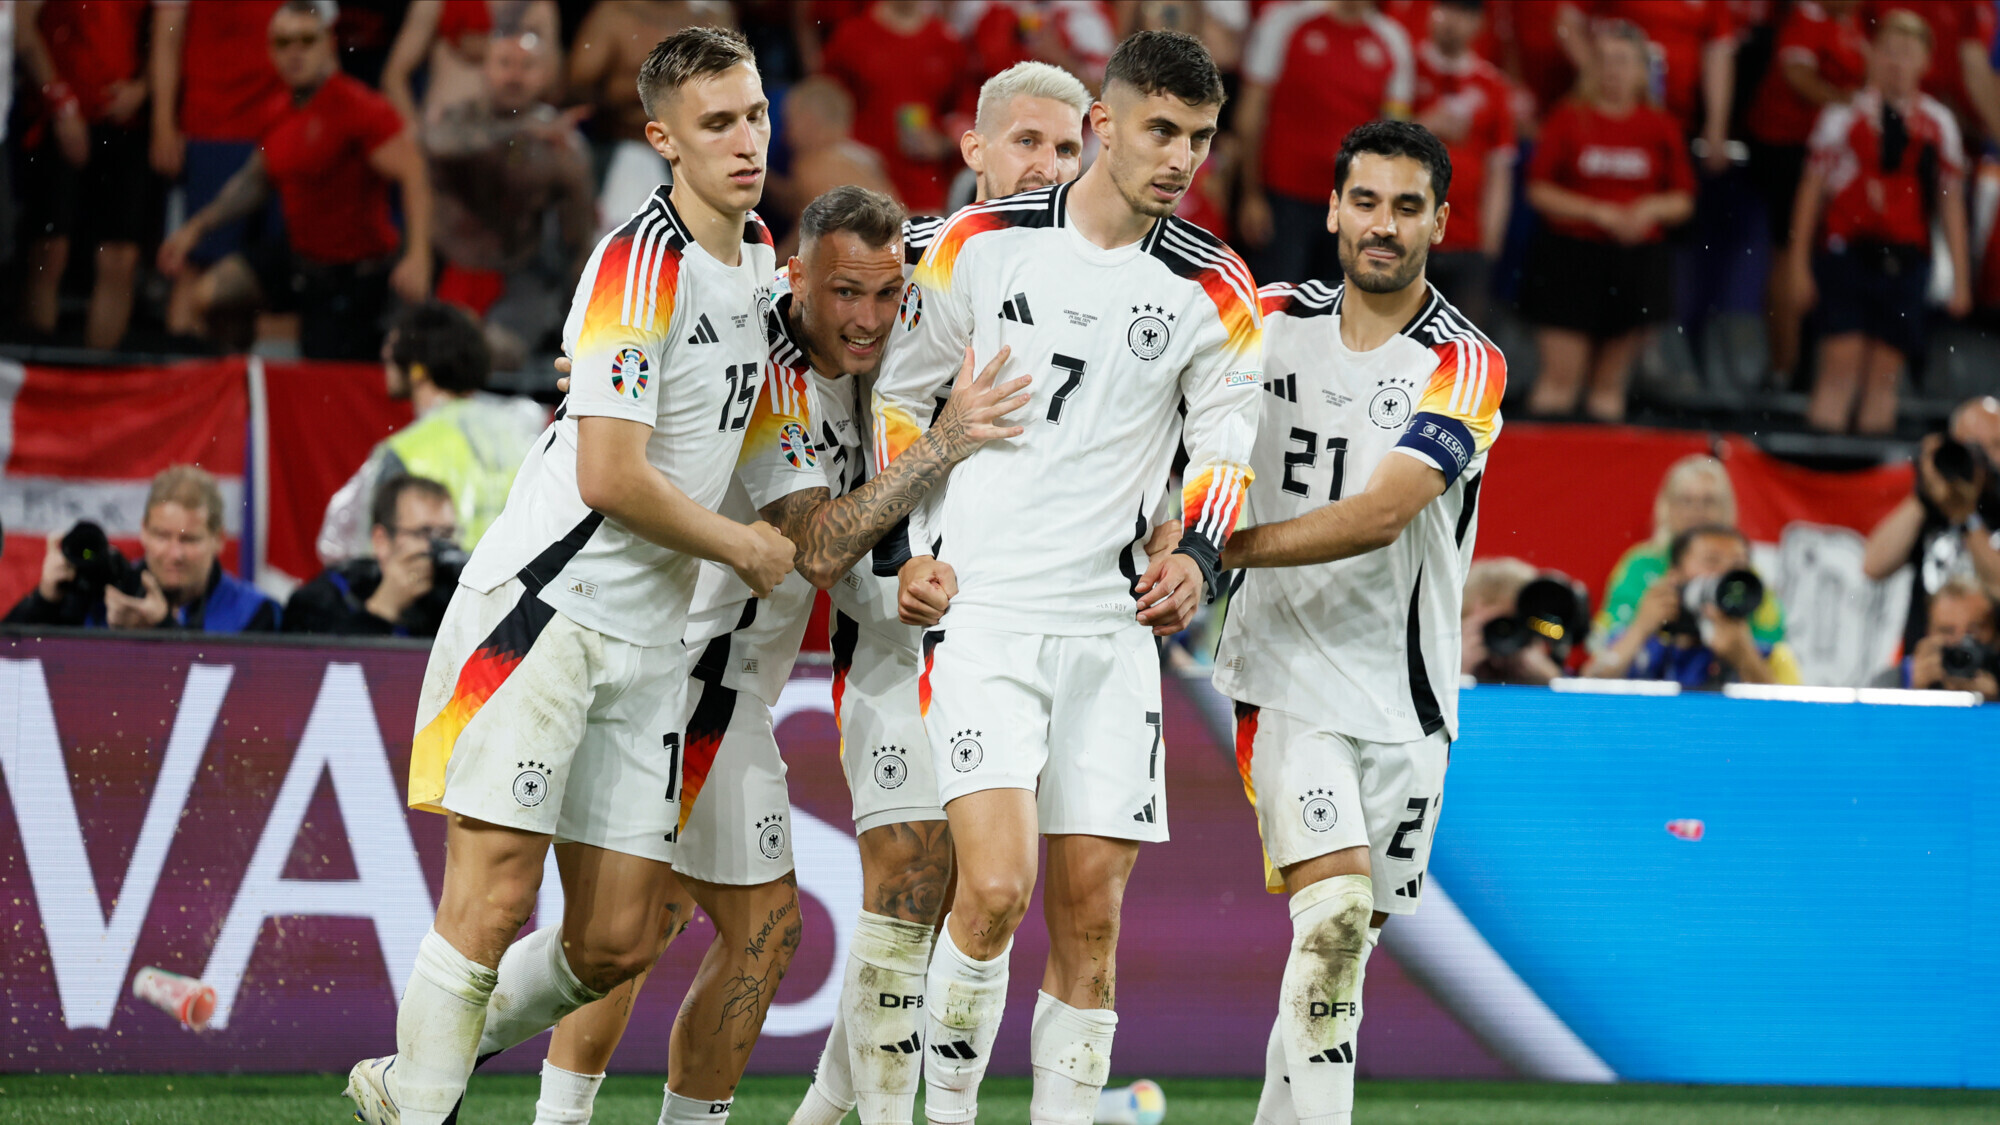 Bild: тренер сборной Германии оскорбил судью за работу на матче Евро с Испанией